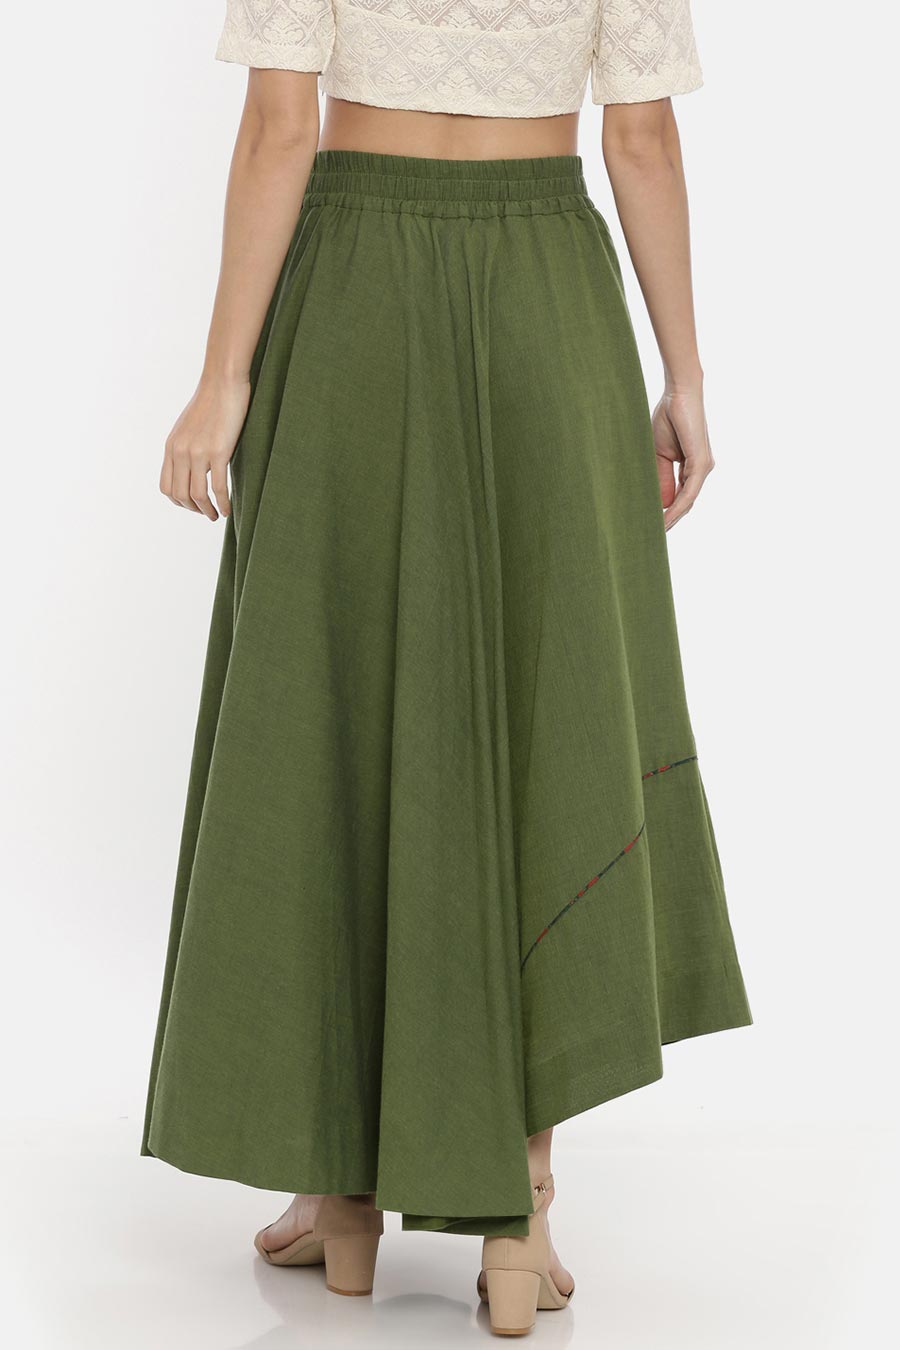 Green Cotton Asymmetrical Skirt